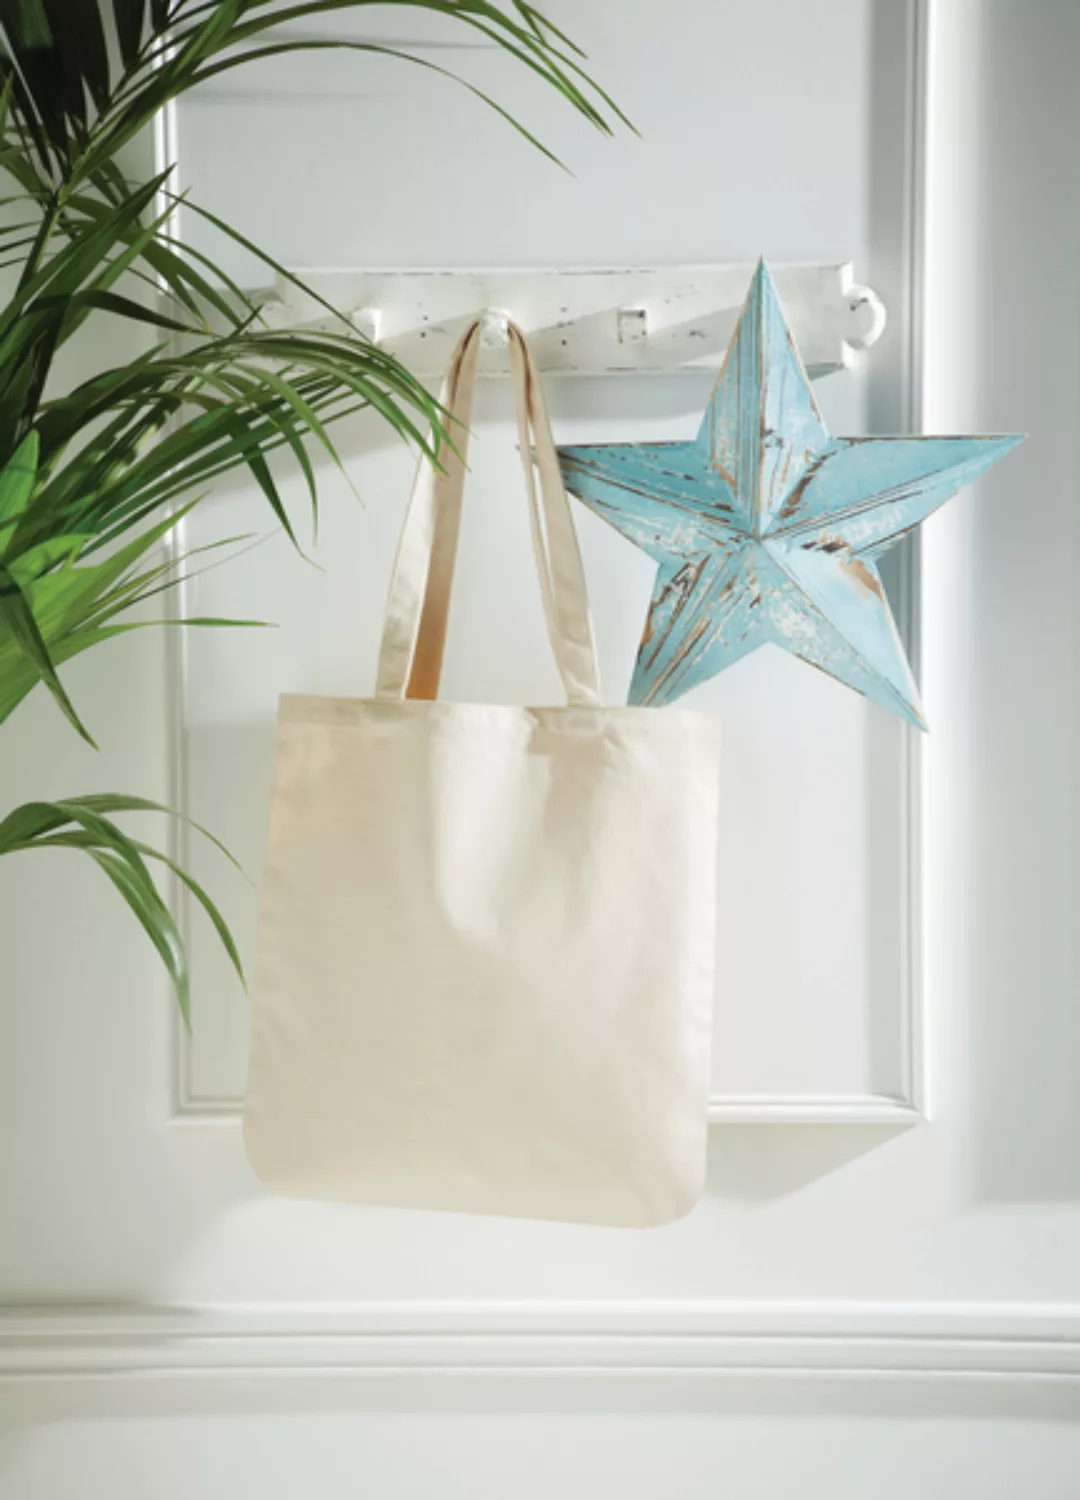 Baumwolltasche Shopper Westford Mill Earthaware Organic Spring Bag günstig online kaufen